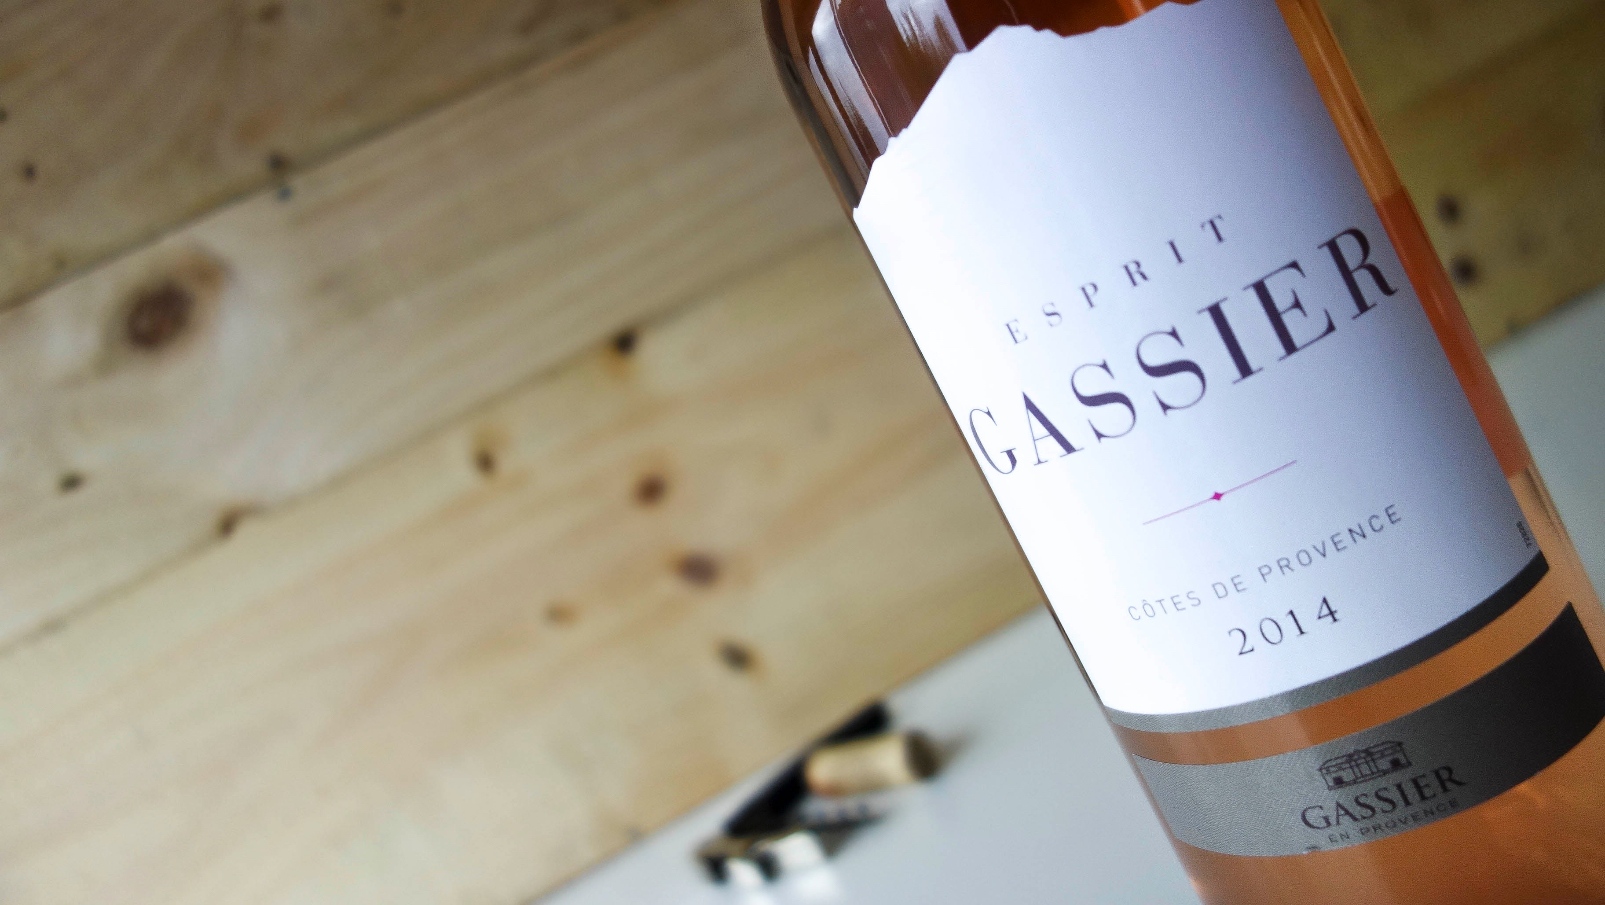 sigaar Temmen Vijftig Wijnbeoordeling: Esprit de Gassier rosé - I Love Food & Wine